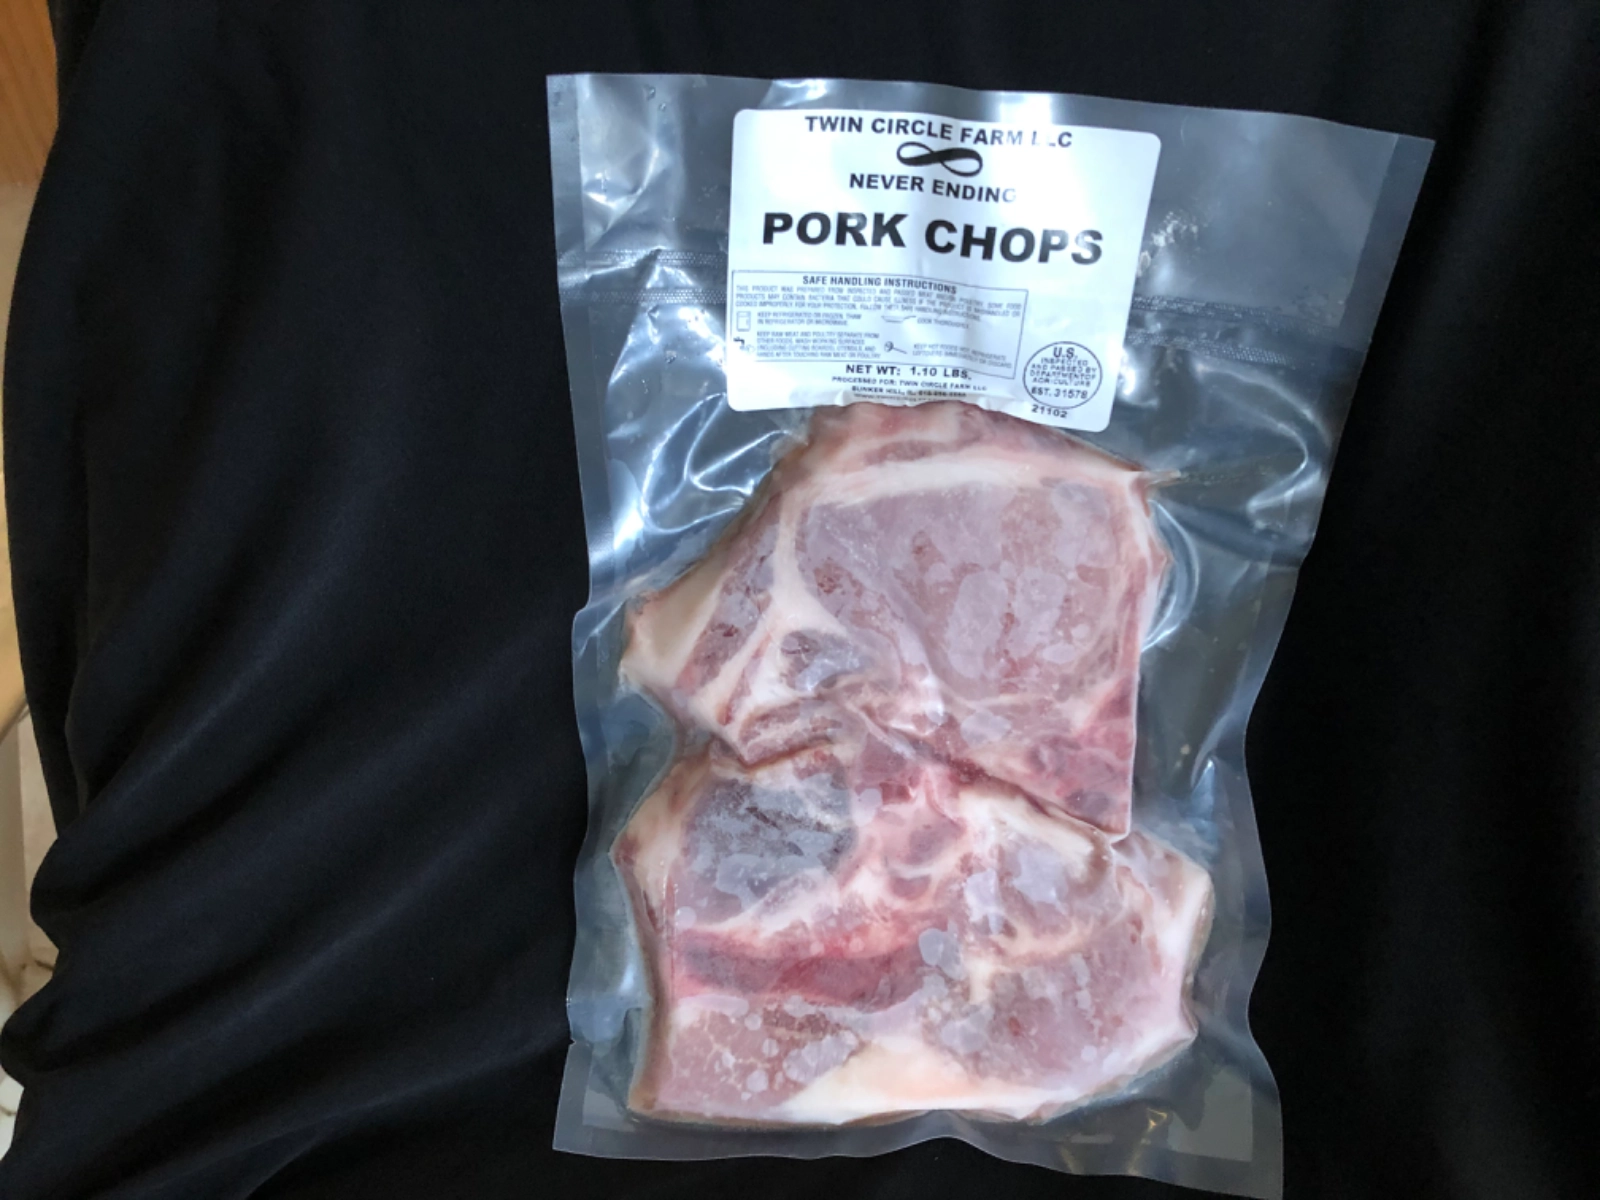 bone-in-pork-chops-pastured-berkshire-pork-34-inch-thick-about-1-pound-